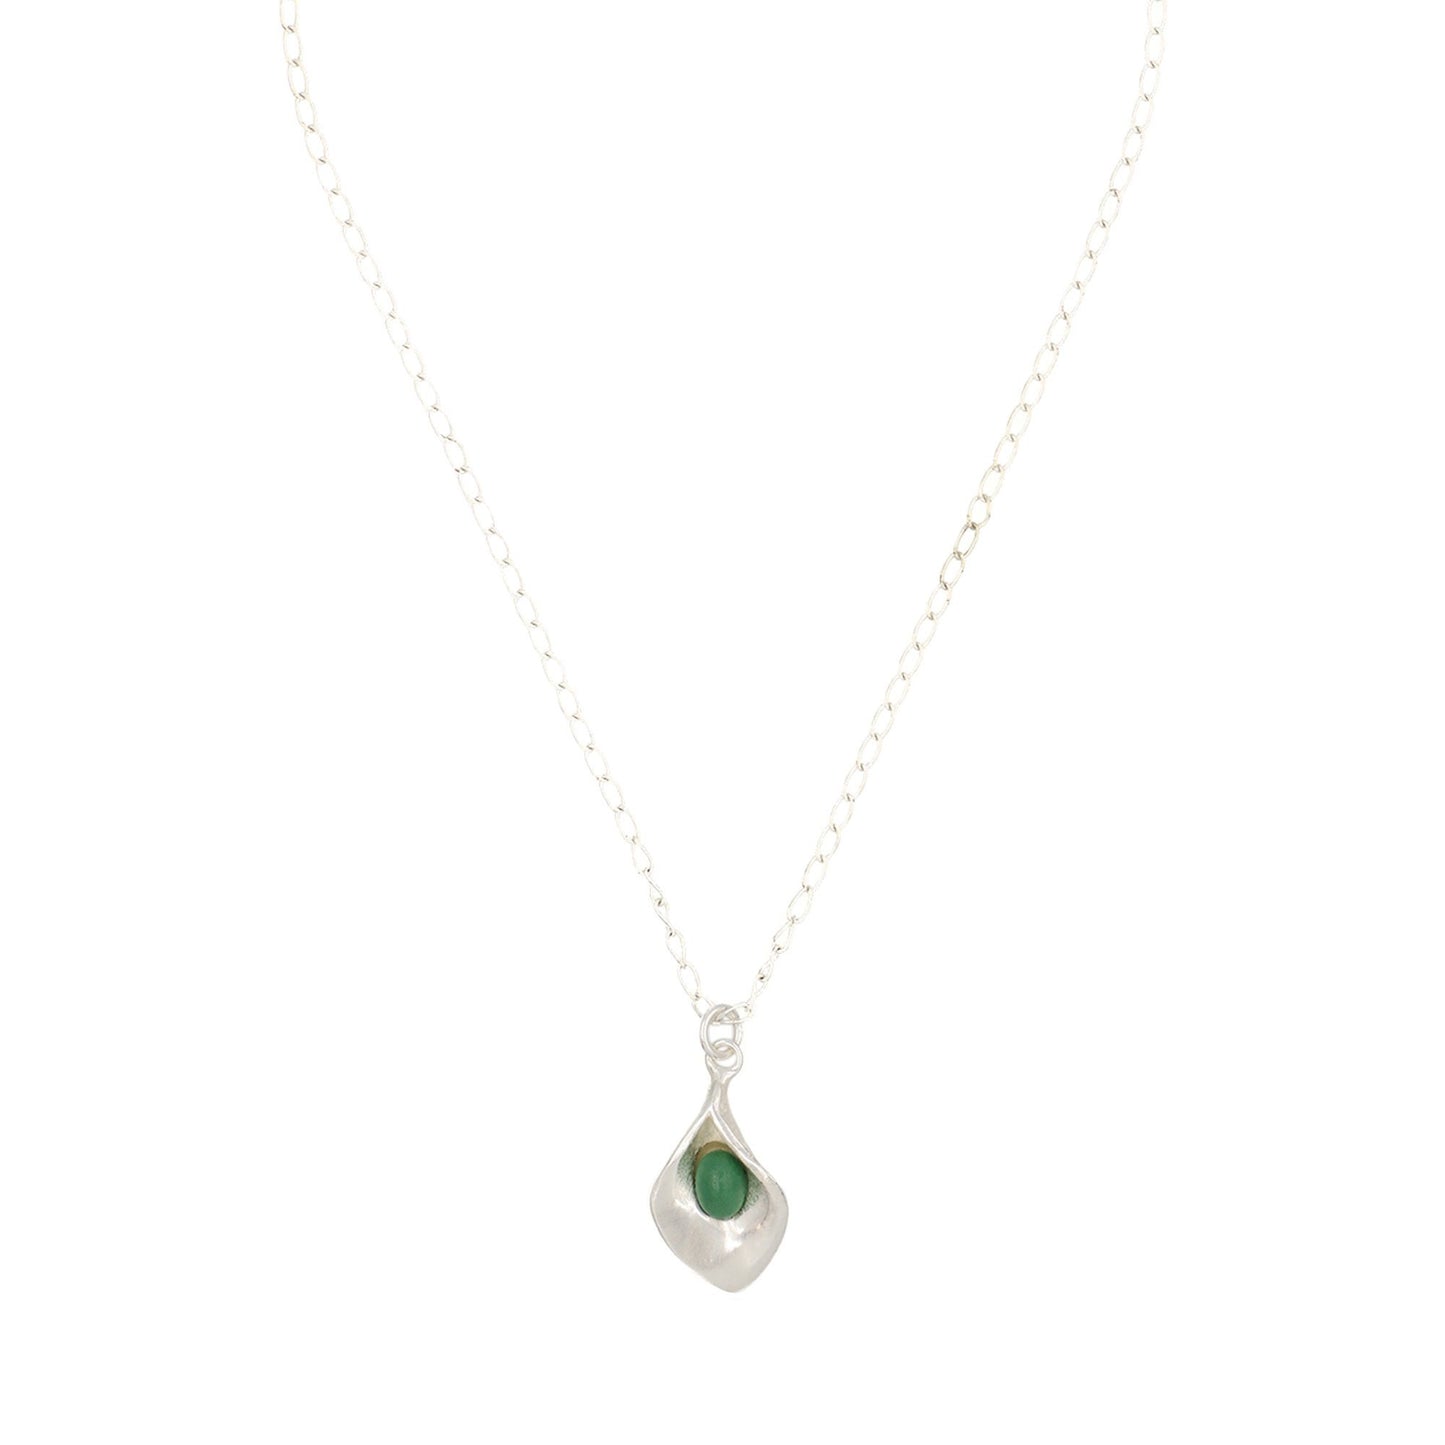 Collar cadena plata charm de cala en esmeralda 40cm